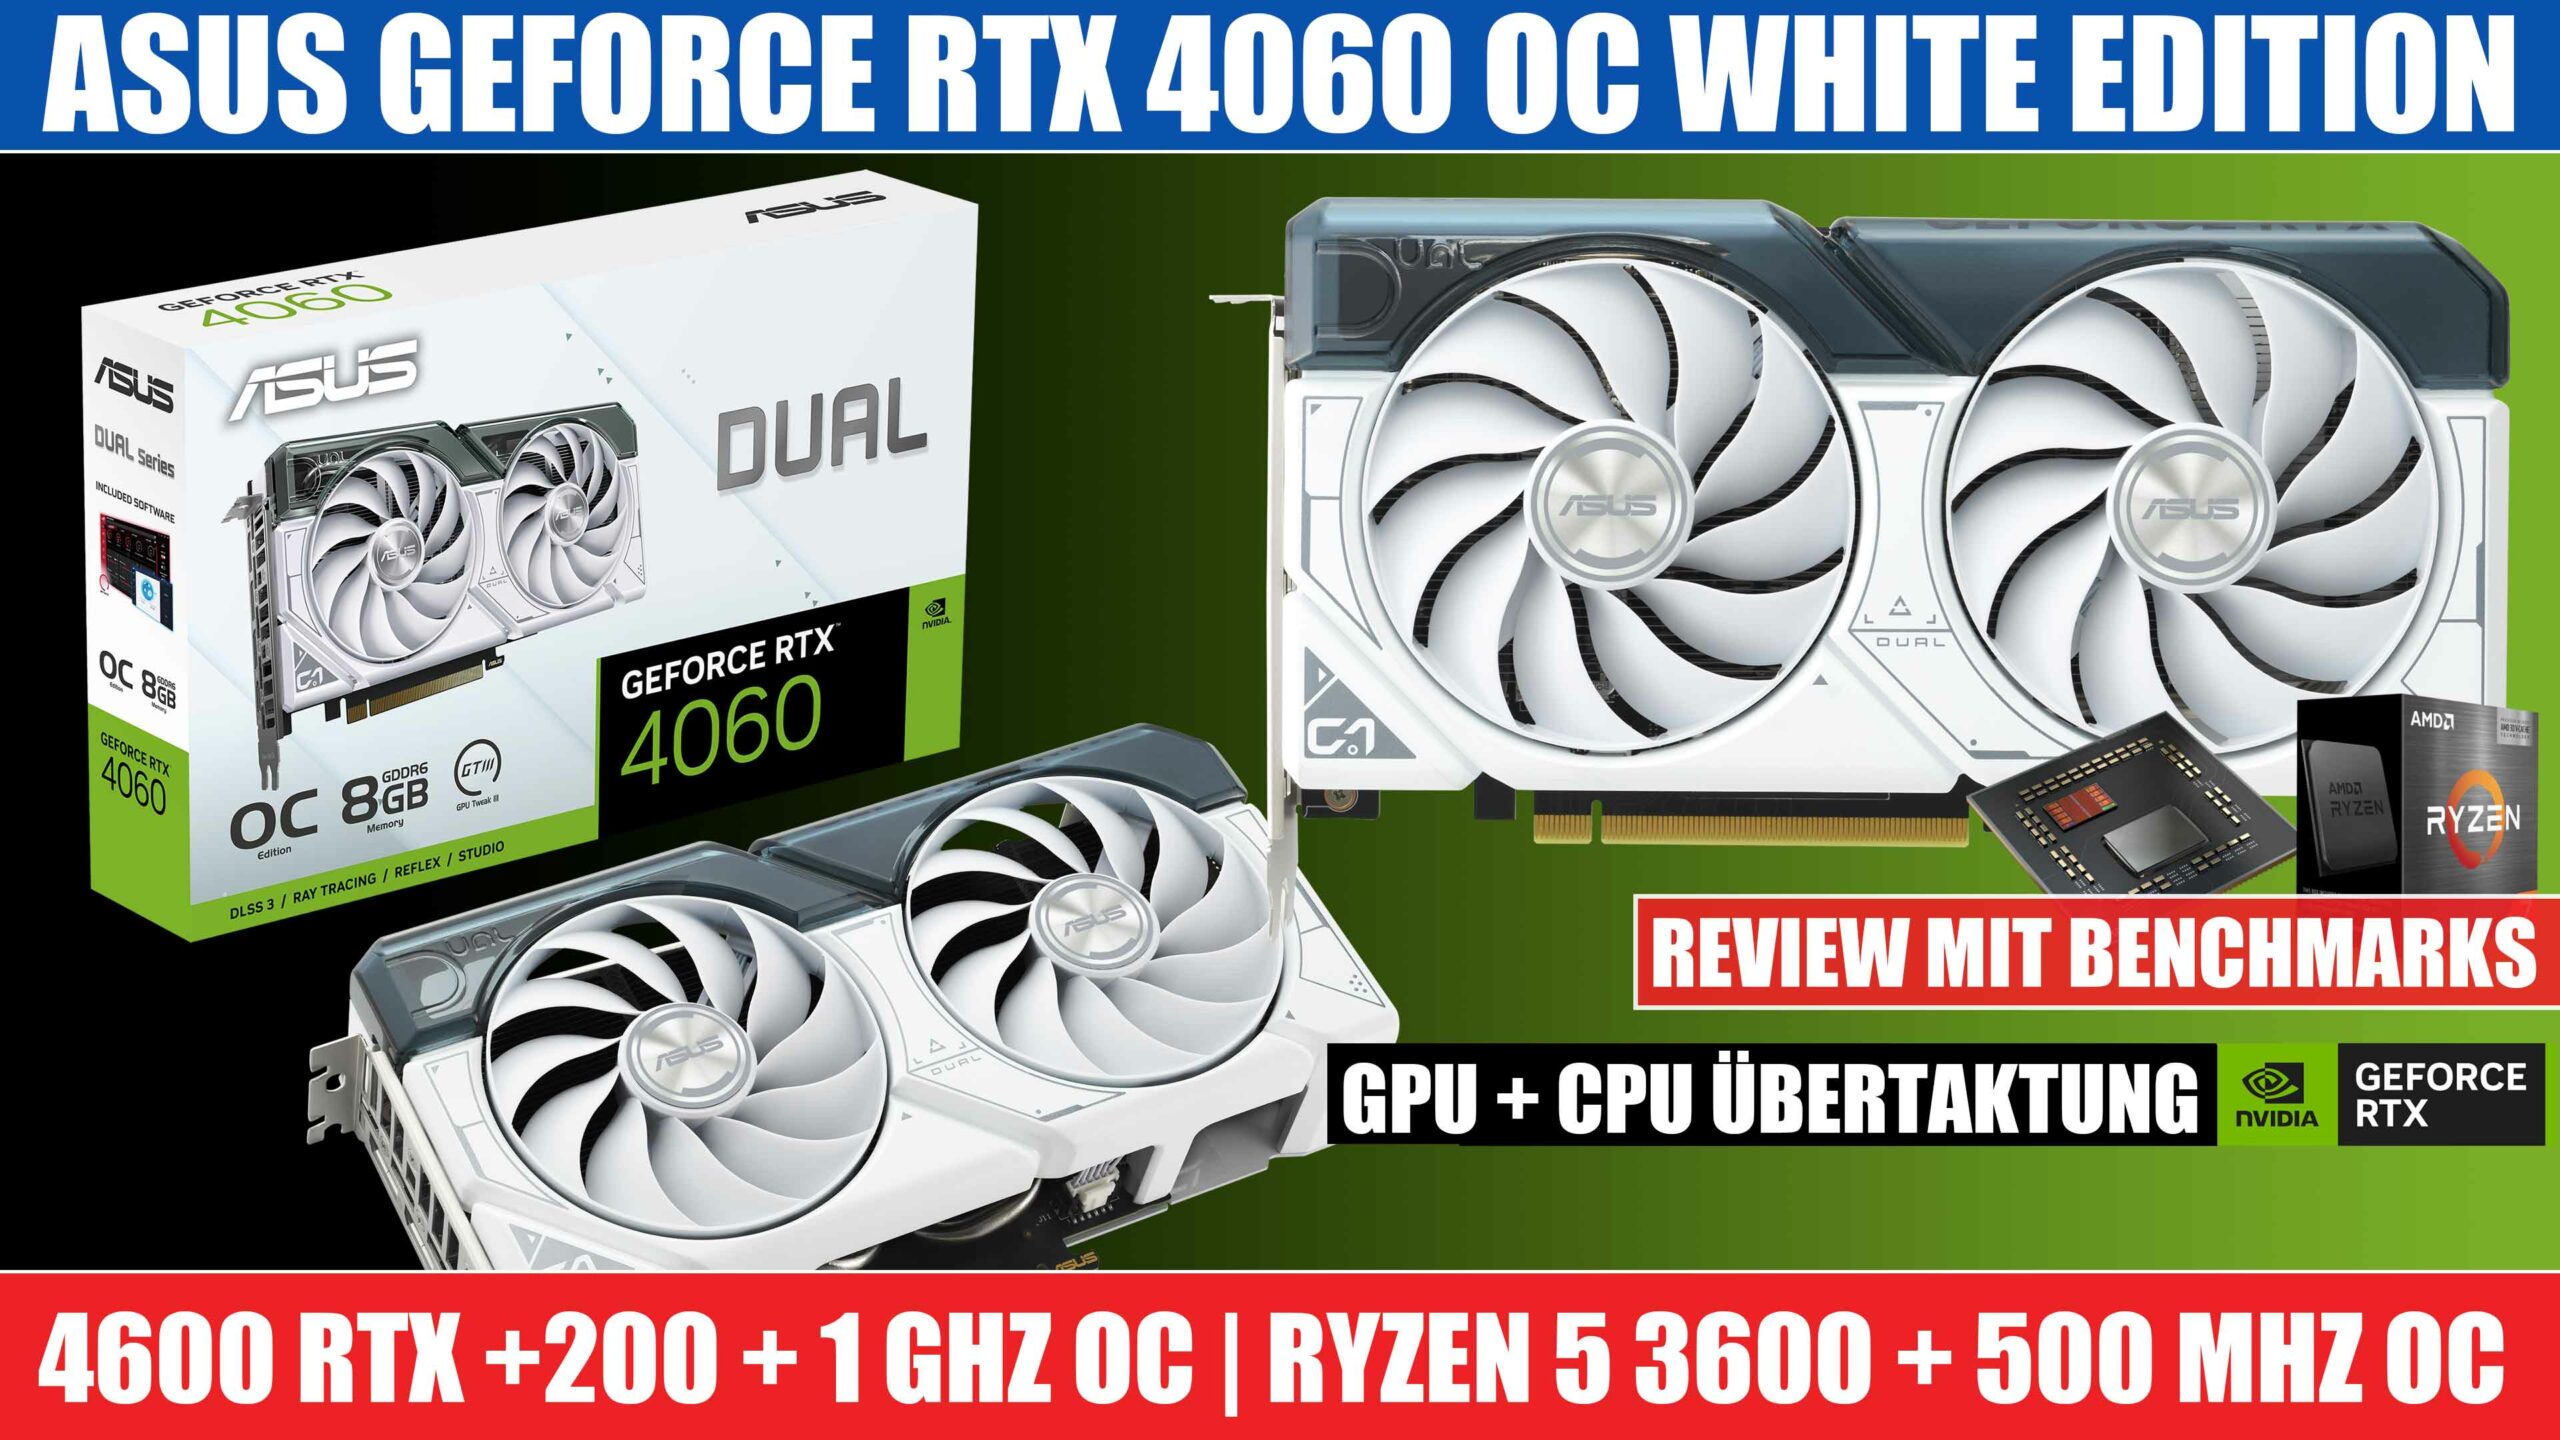 Geforce RTX 4600 Review mit Benchmarks und Übertaktung Tutorial für GPU & CPU